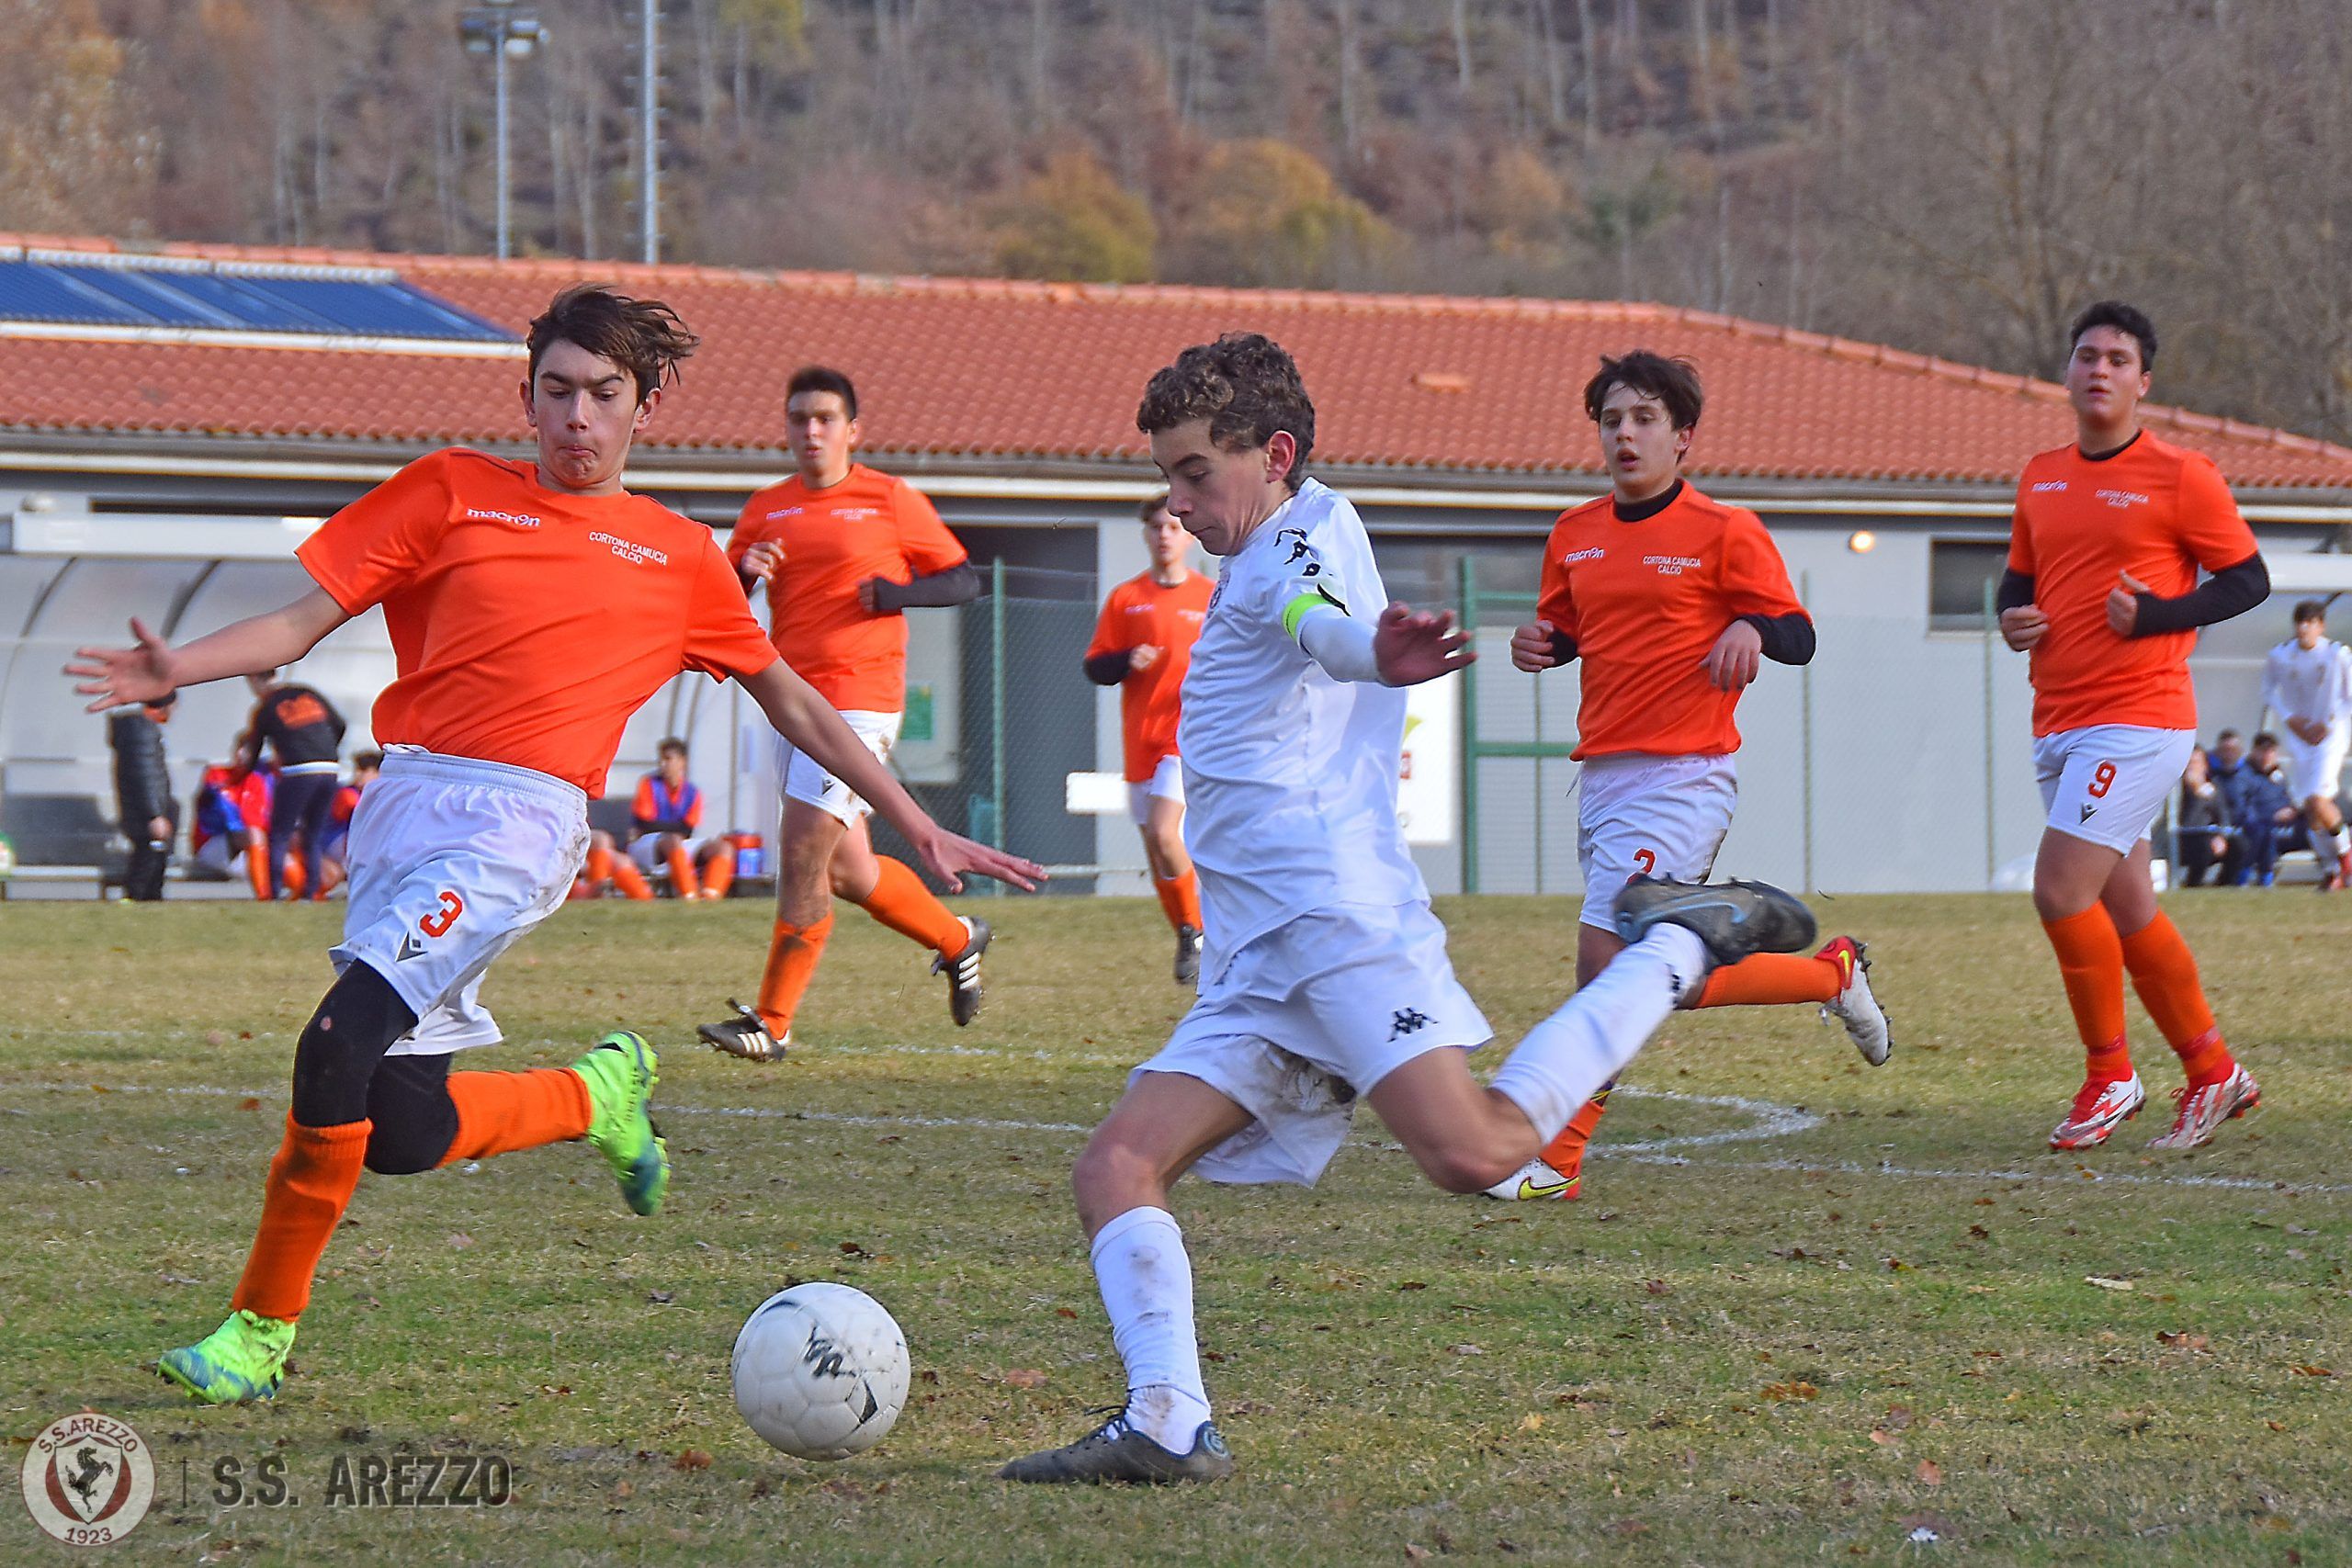 S.S. Arezzo calcio settore giovanile